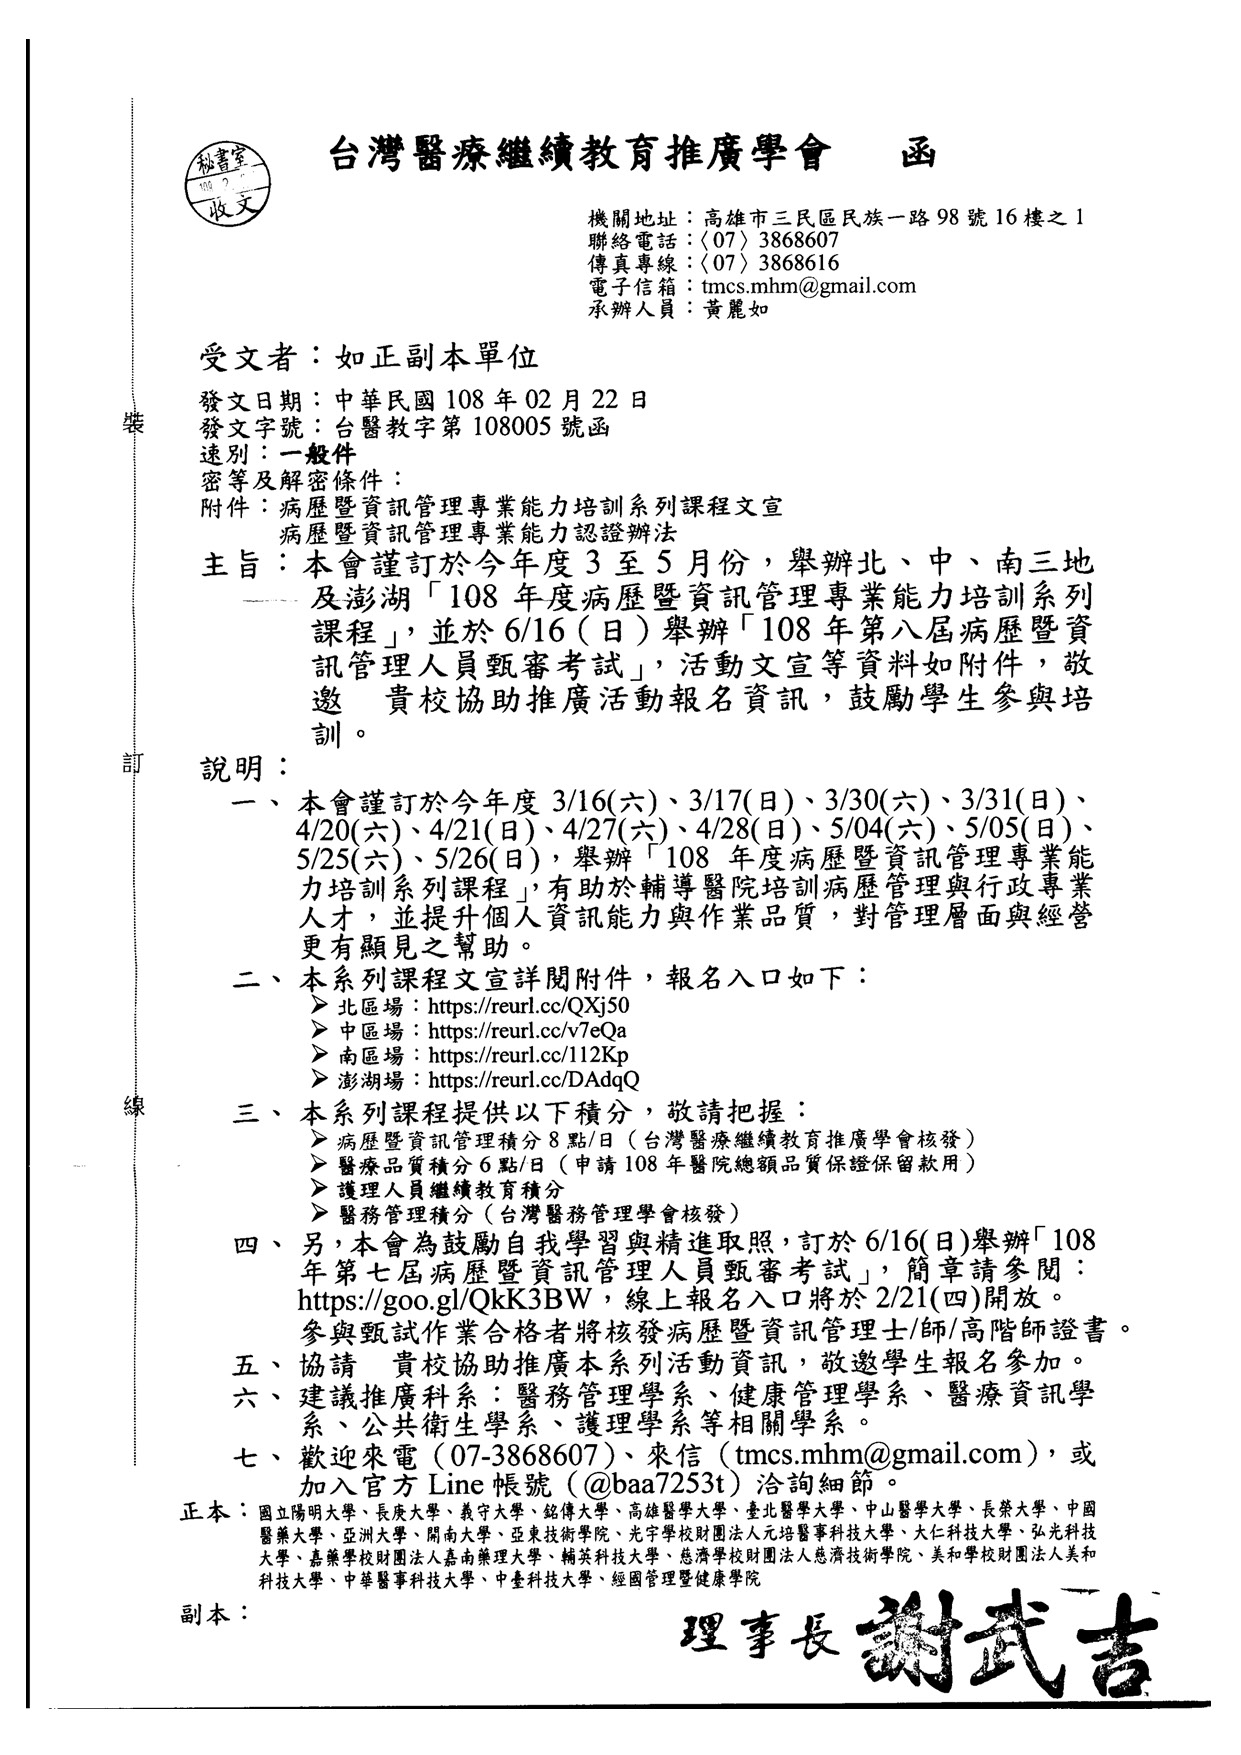 1080305台灣醫療繼續教育推廣協會課程公文 頁面 1